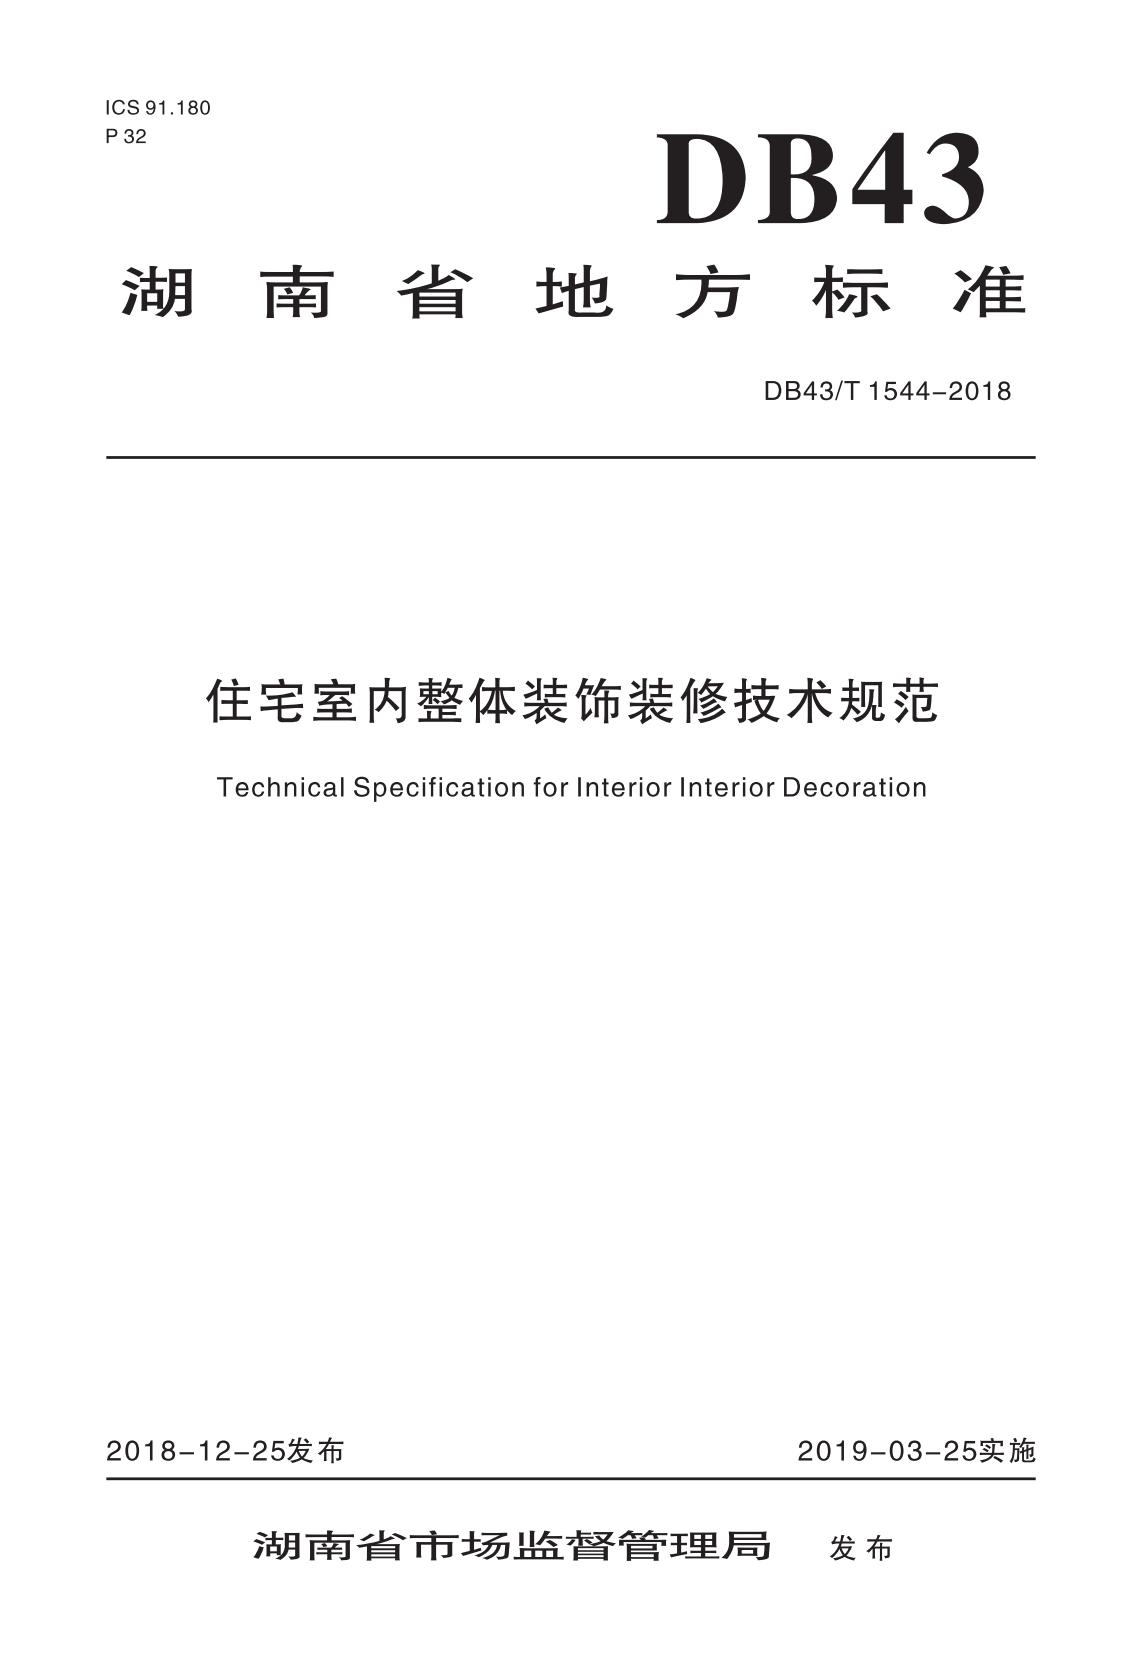 湖南省地方标准《住宅室内整体装饰装修技术规范》